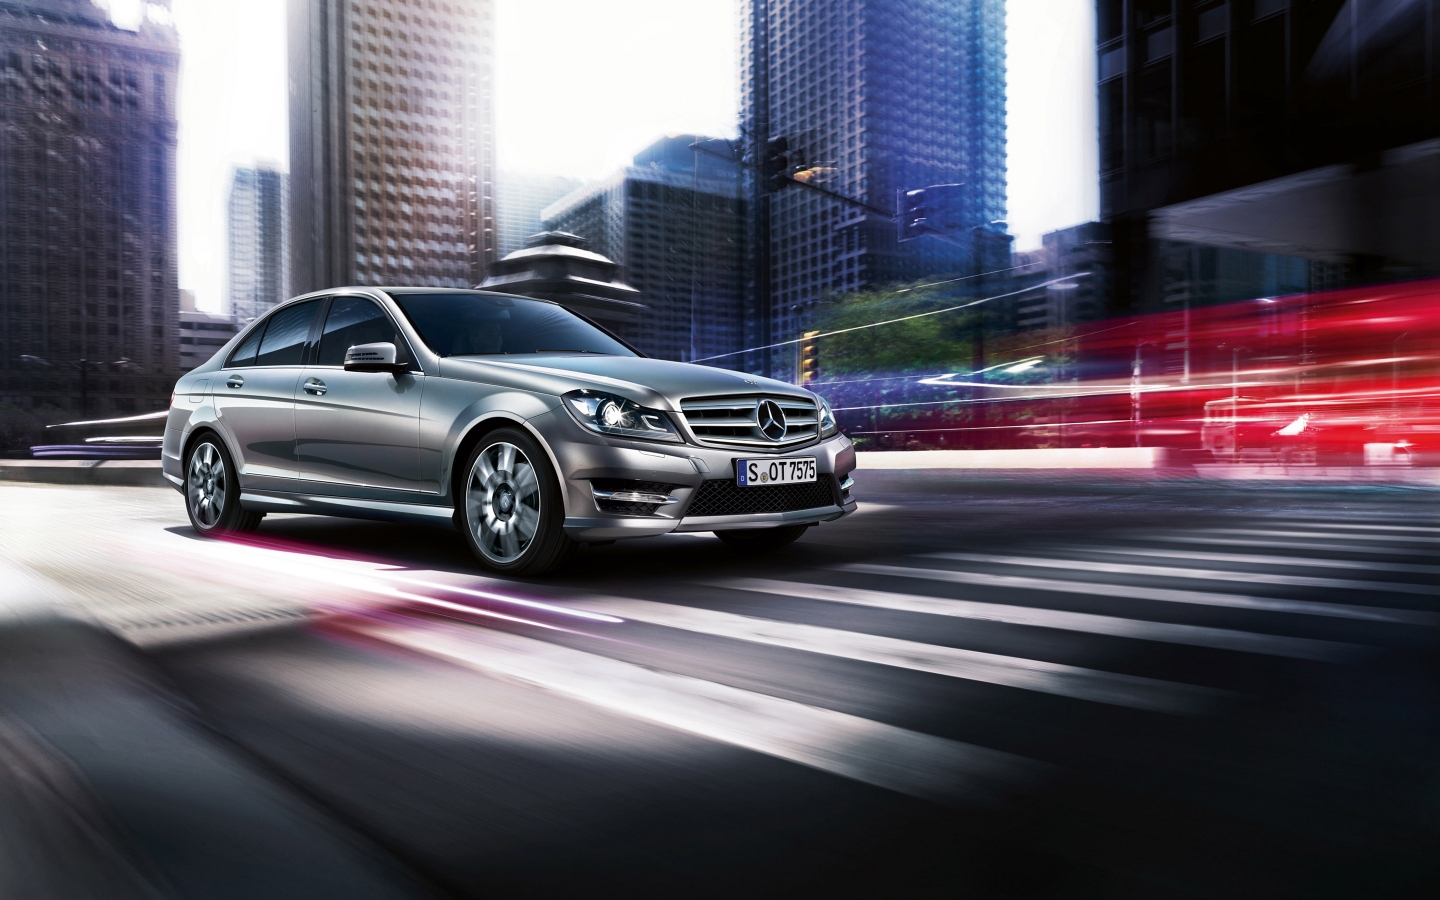 2013 Mercedes-Benz C Class for 1440 x 900 widescreen resolution